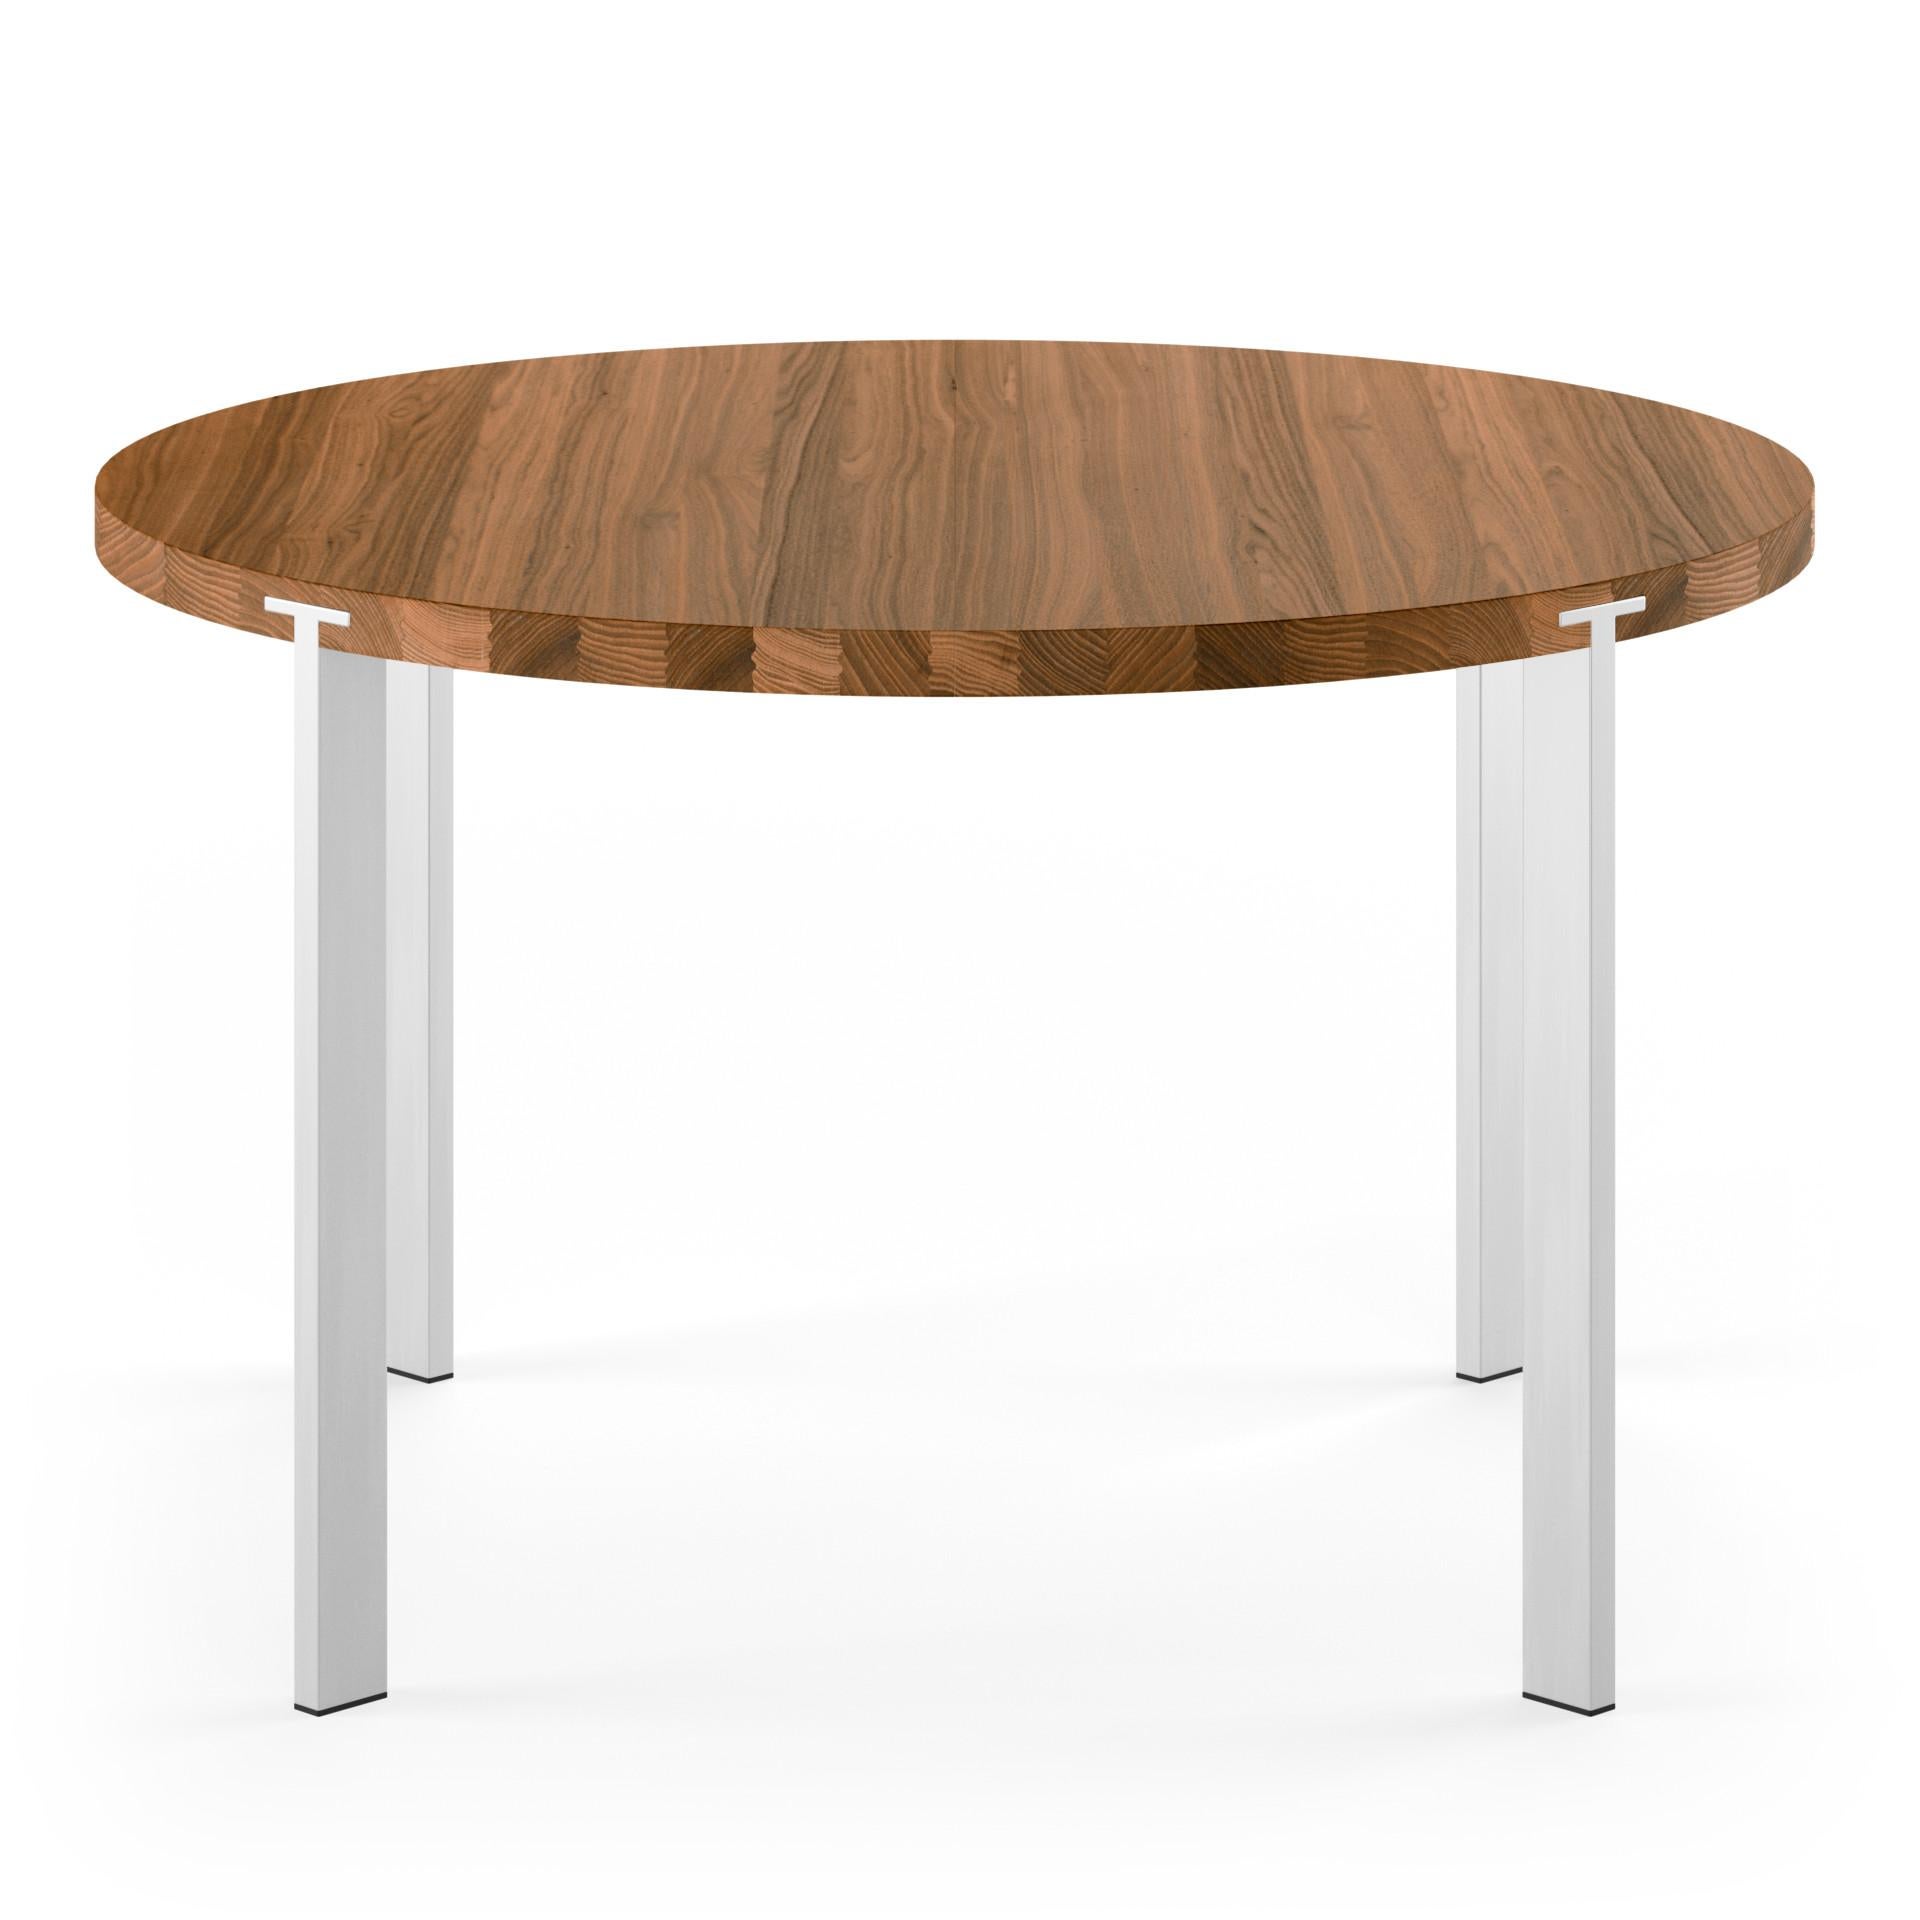 Danish GM2100 Round Table, Walnut - Design by Nissen & Gehl MDD For Sale